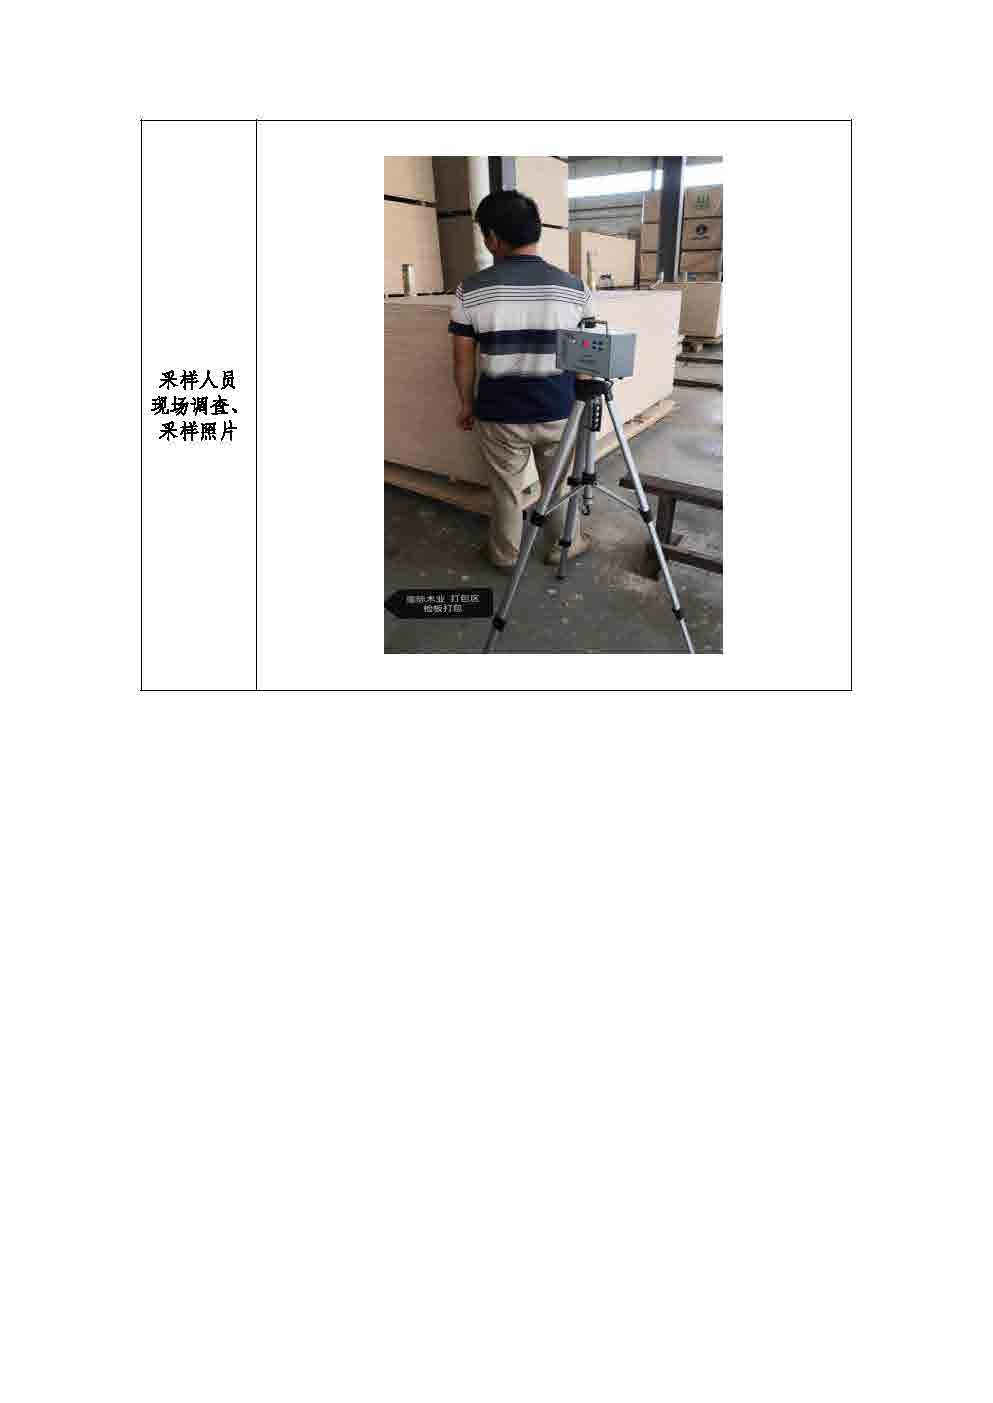 广西瑞际木业有限公司工作场所职业病危害因素检测报告信息公示